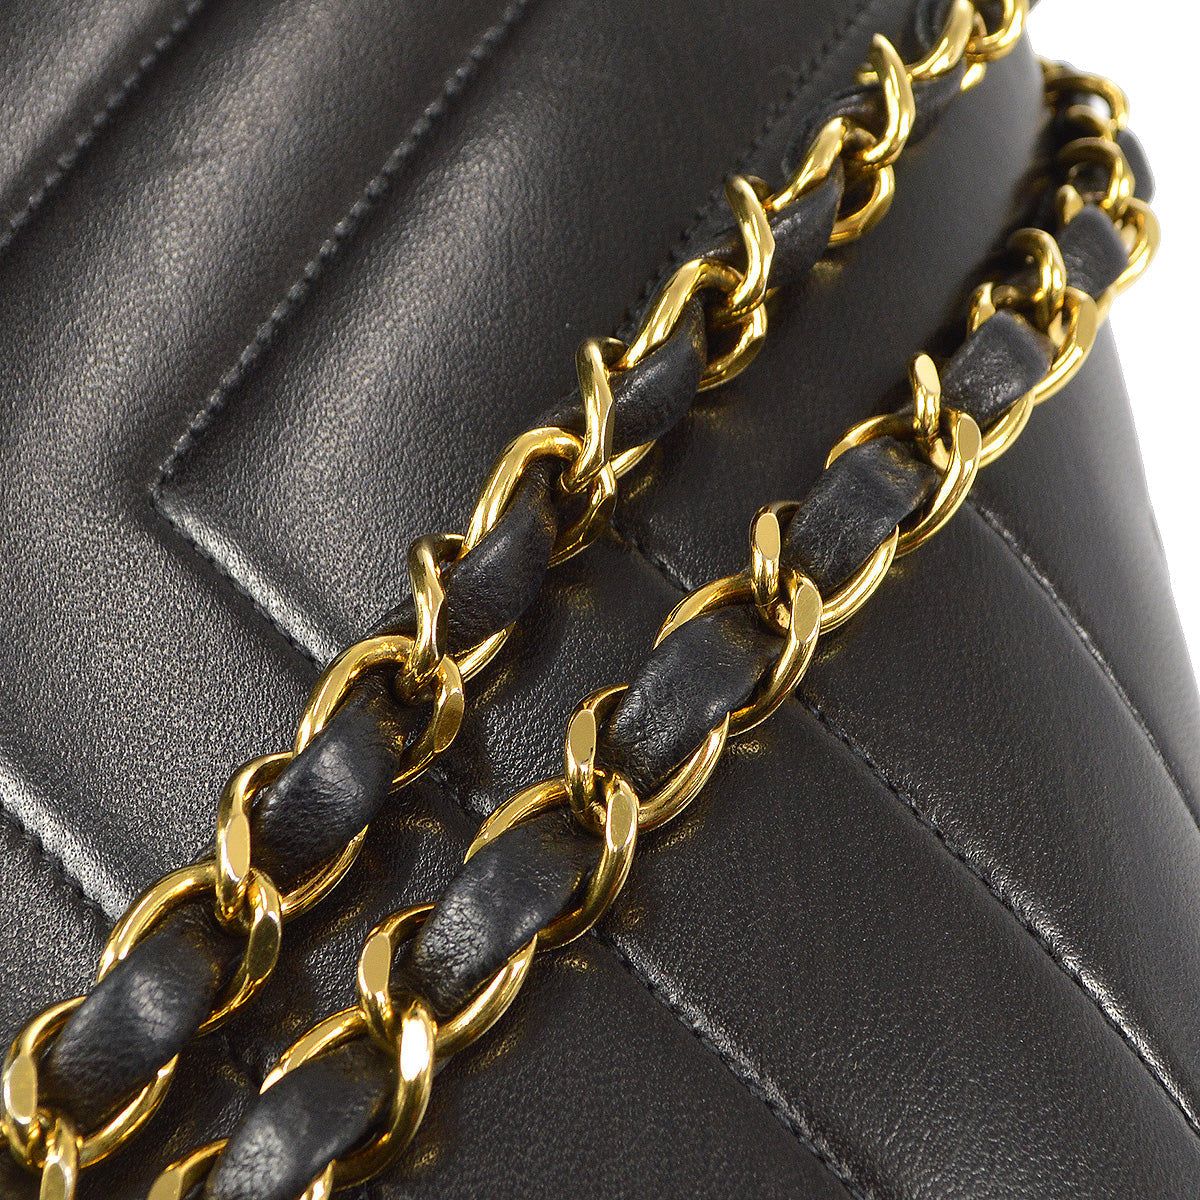 Chanel 1992-1994 Chevron Stitch Chain Shoulder Bag · INTO